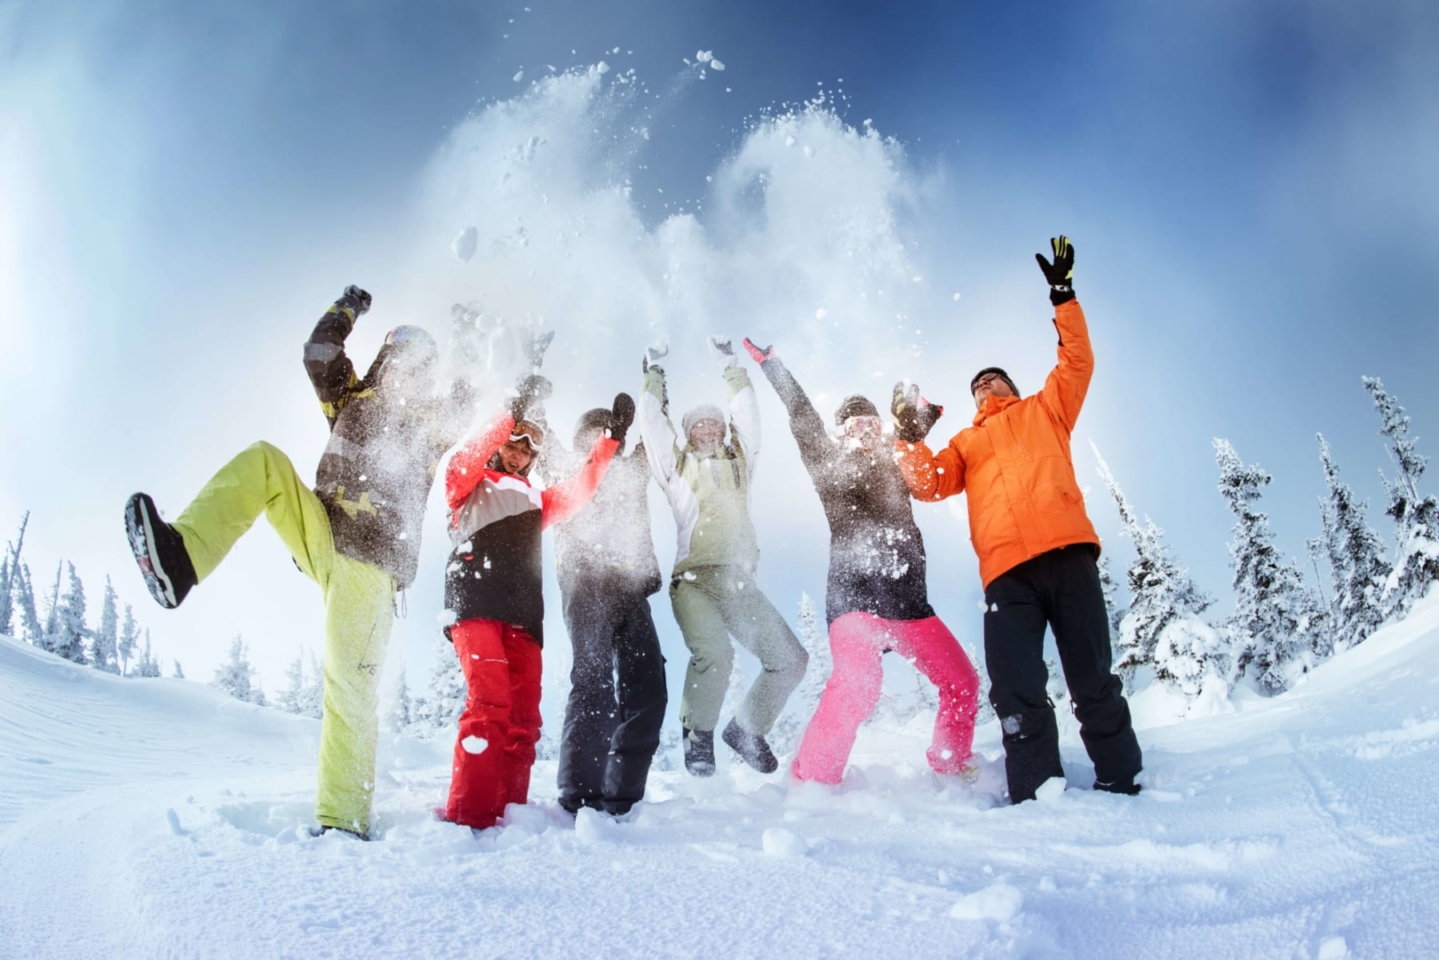 Six people having fun in the snow